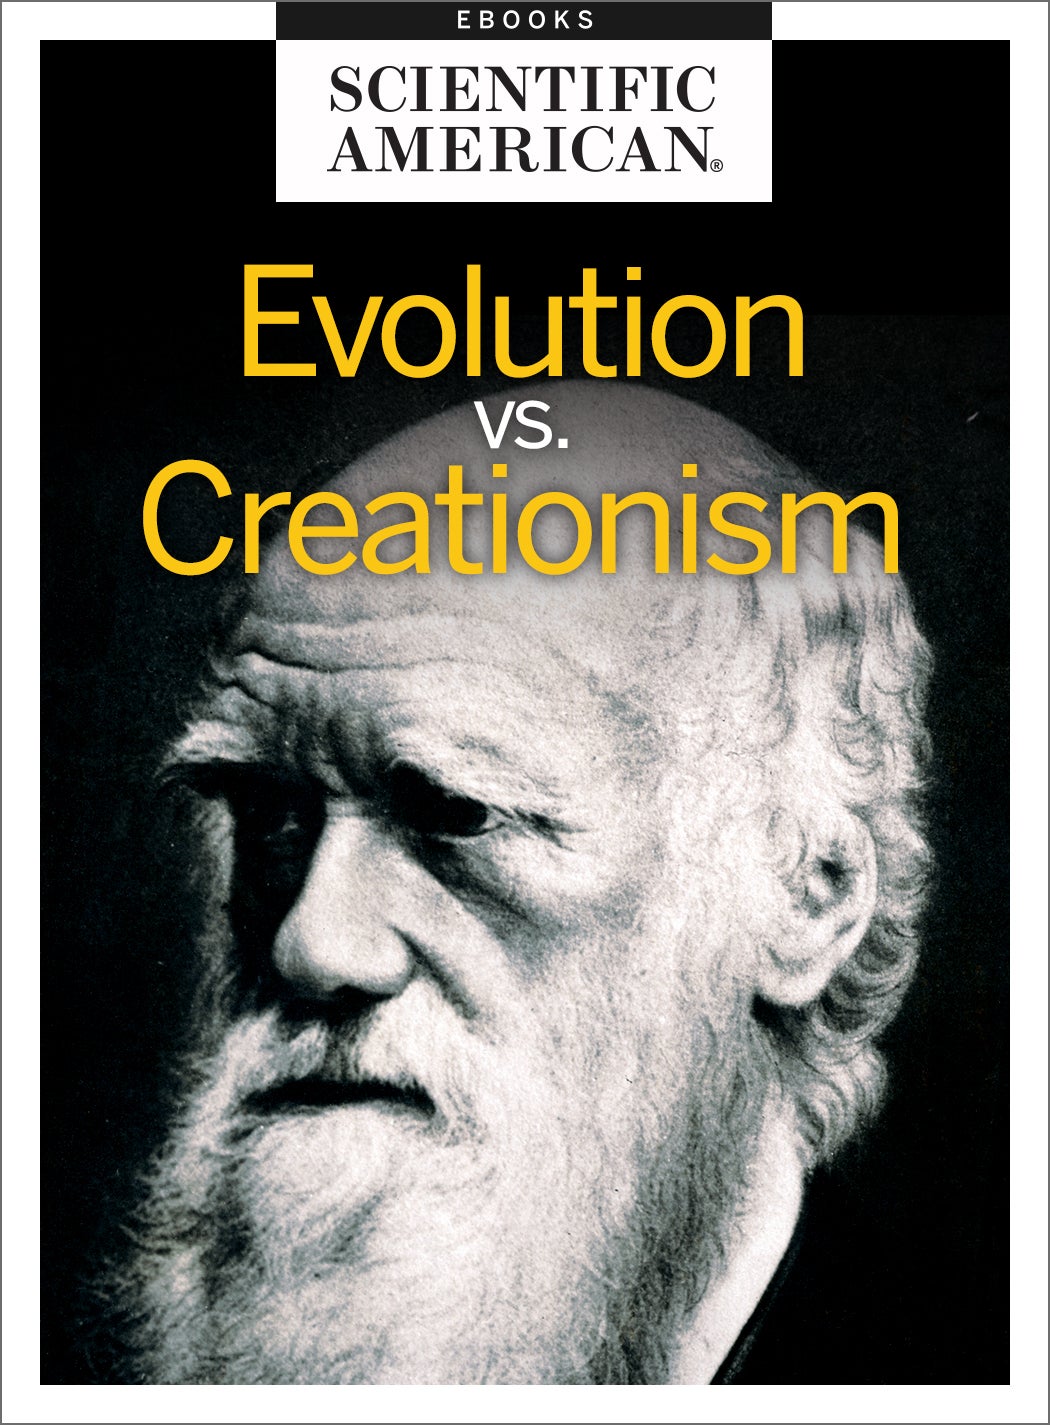 Scientific Creationism 